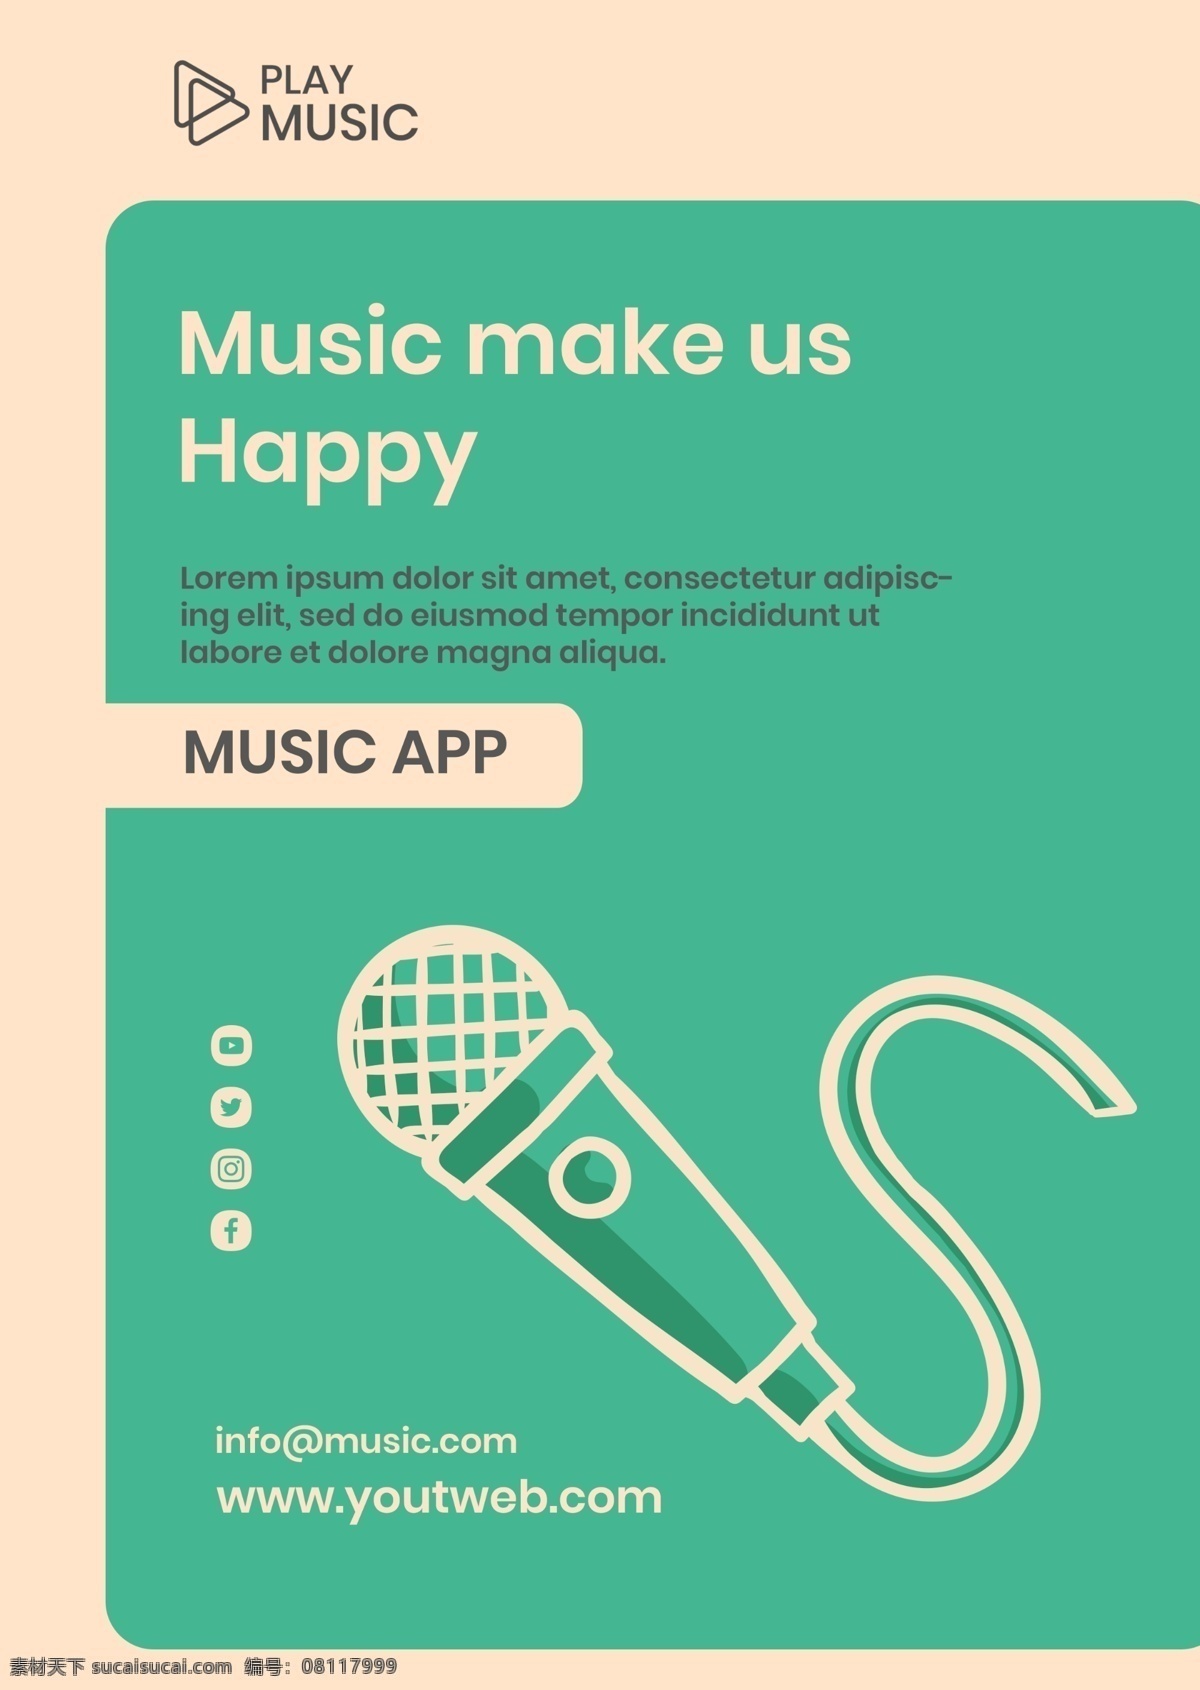 音乐 应用 app 海报 音乐应用 app海报 音乐节 音乐海报 创意海报 手绘海报